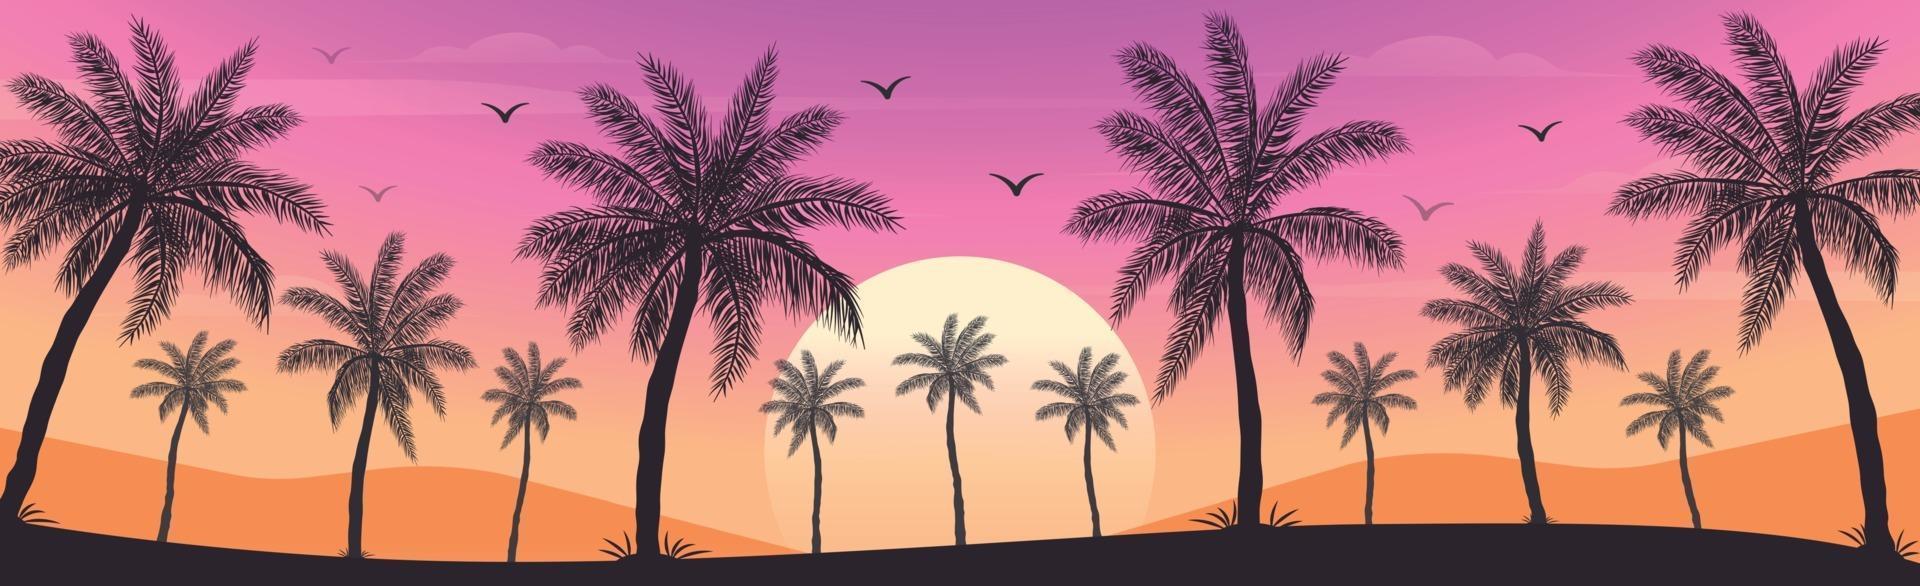 solnedgång på stranden med palmer vektor